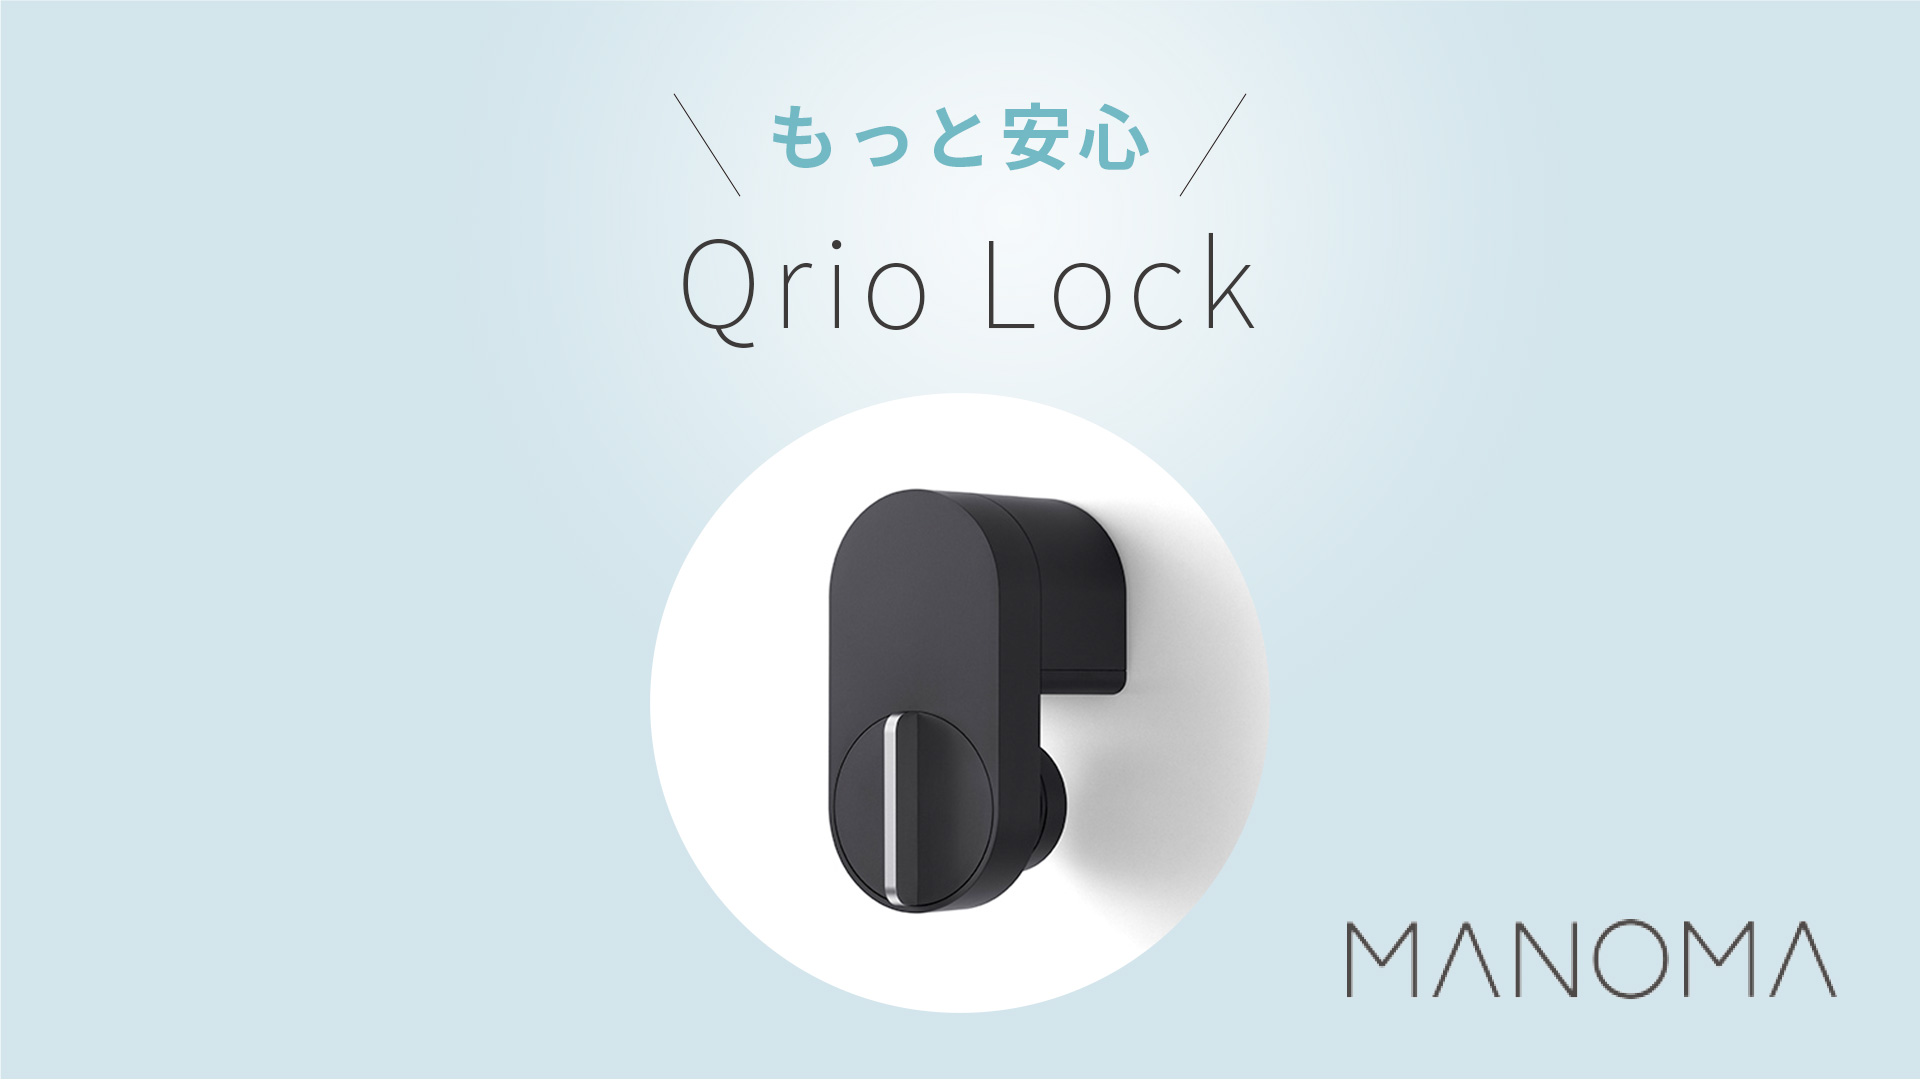 [機器]・Qrio Lockのご紹介